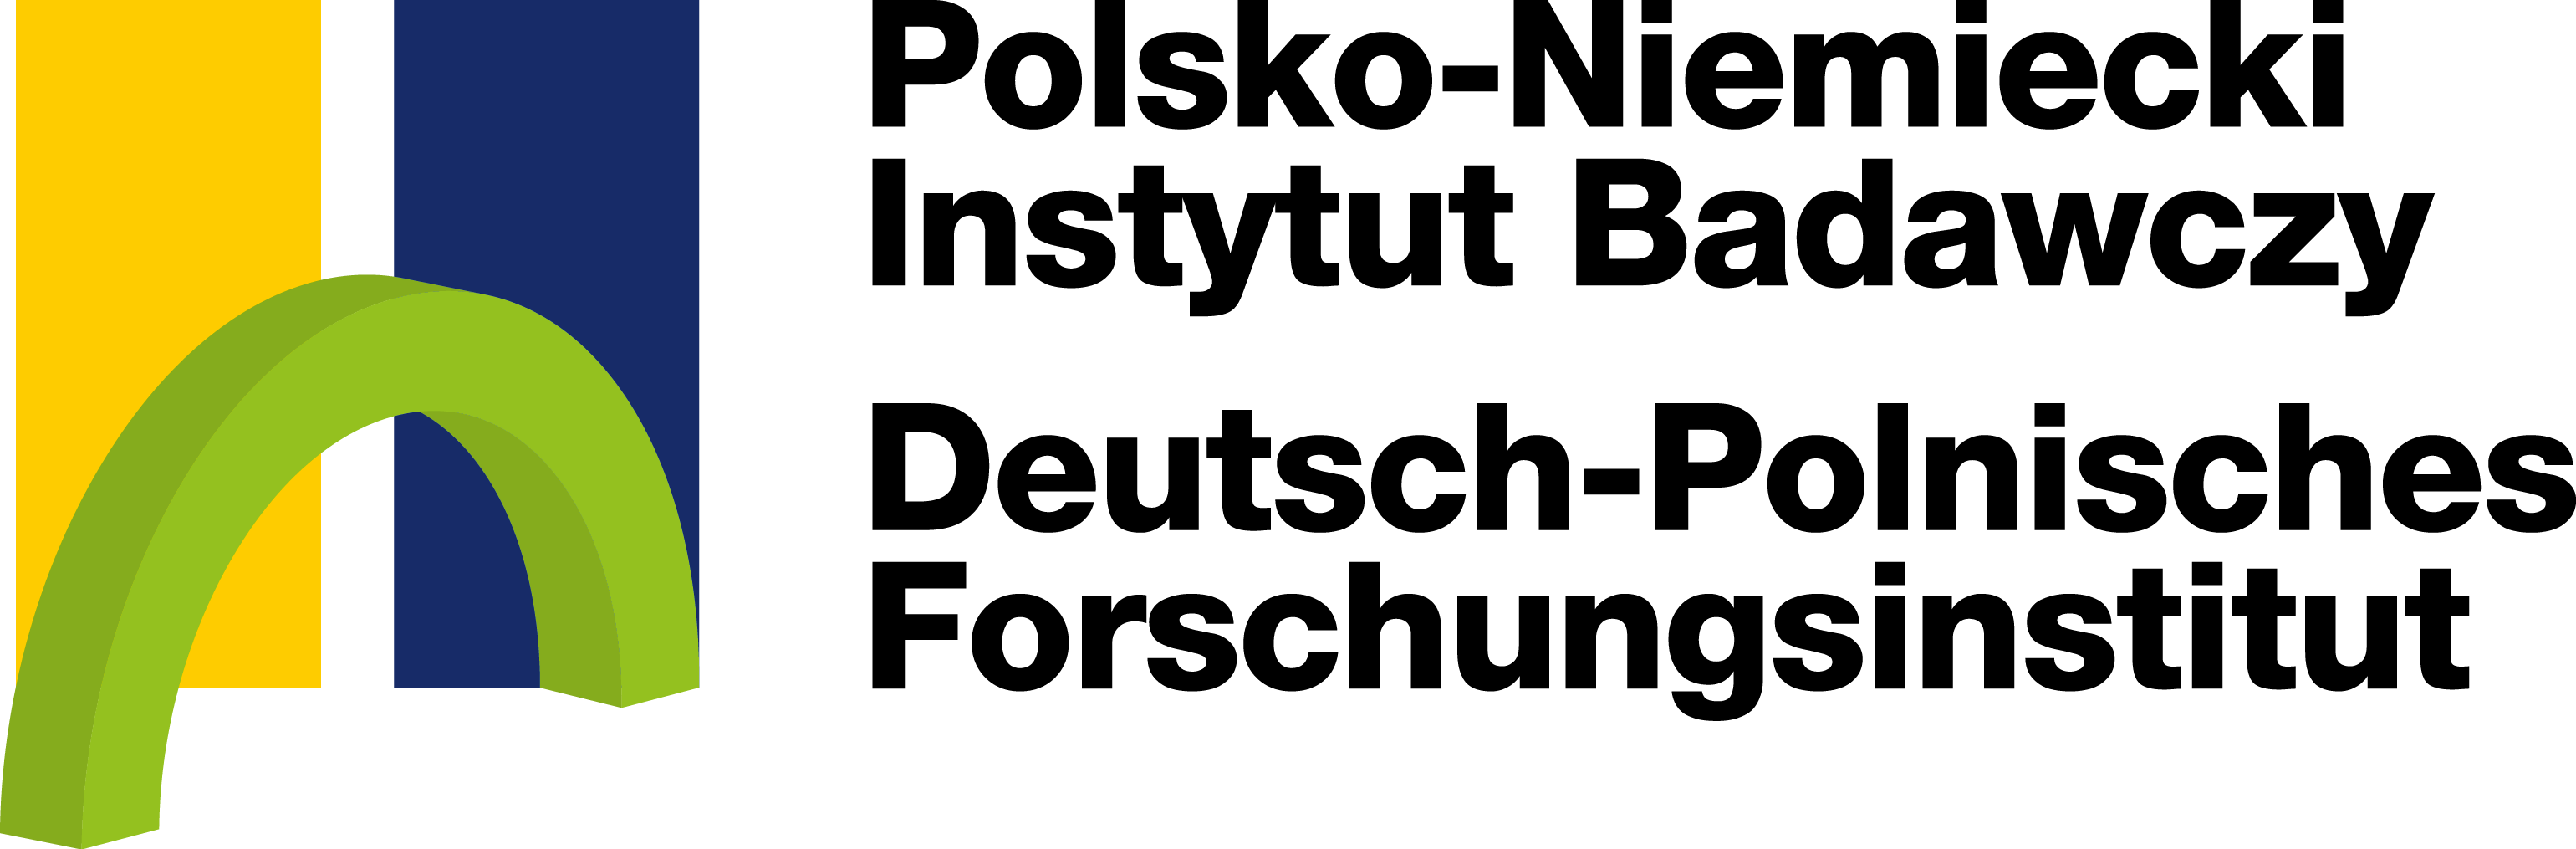 Deutsch-Polnisches Forschungsinstitut